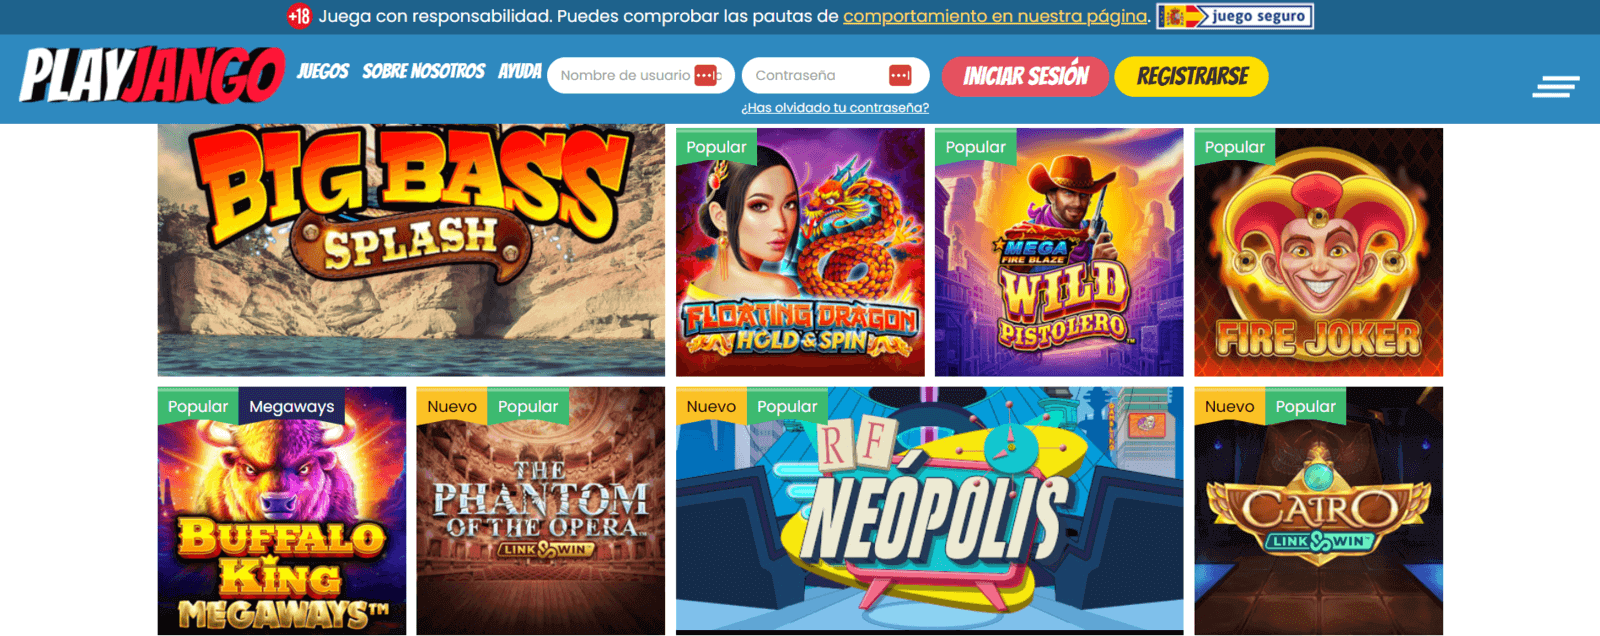 PlayJango   mejores juegos de Play Jango Casino online en España